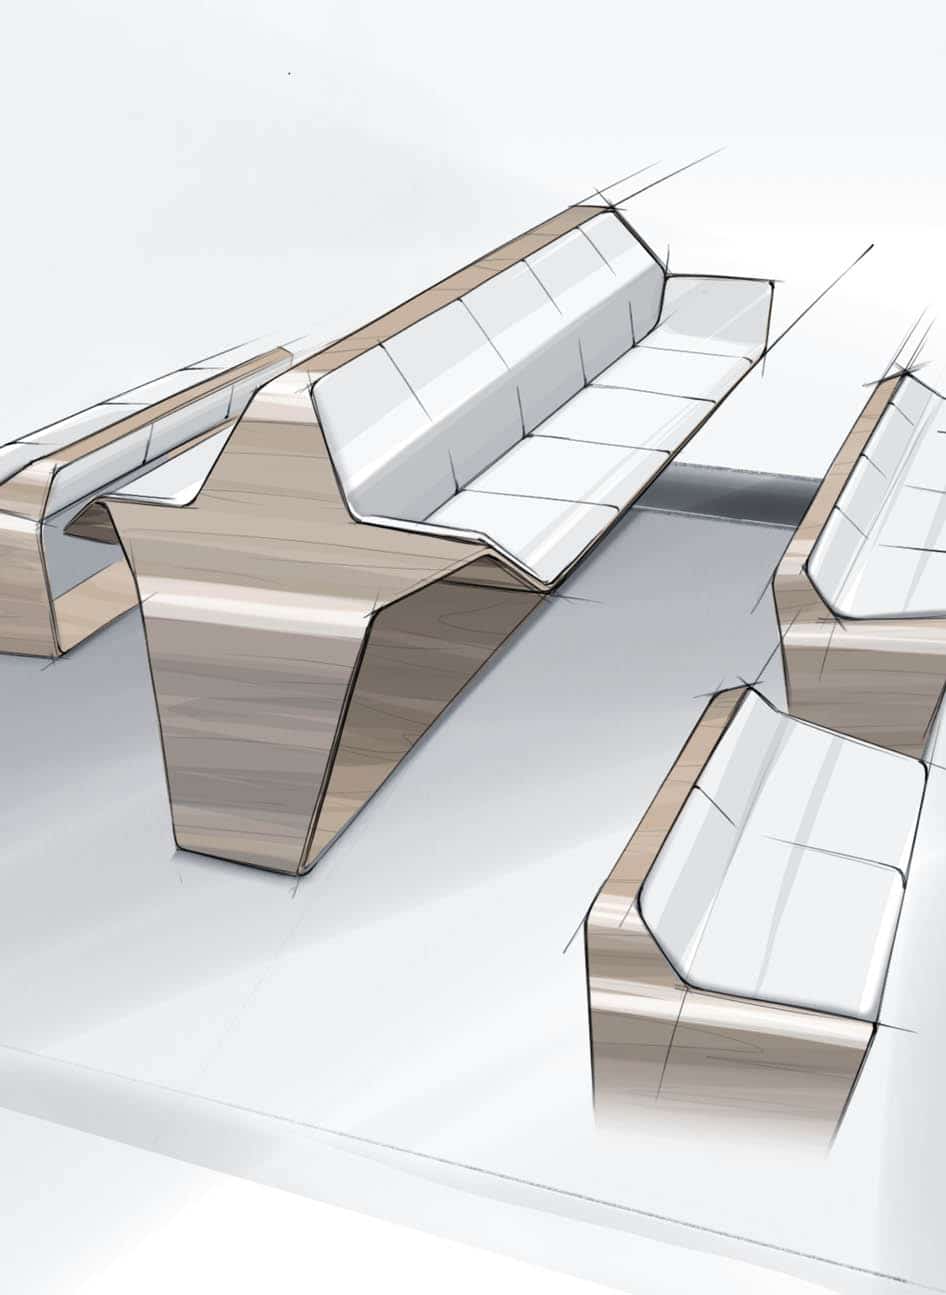 Produktdesign Skizze von Sitzbänken